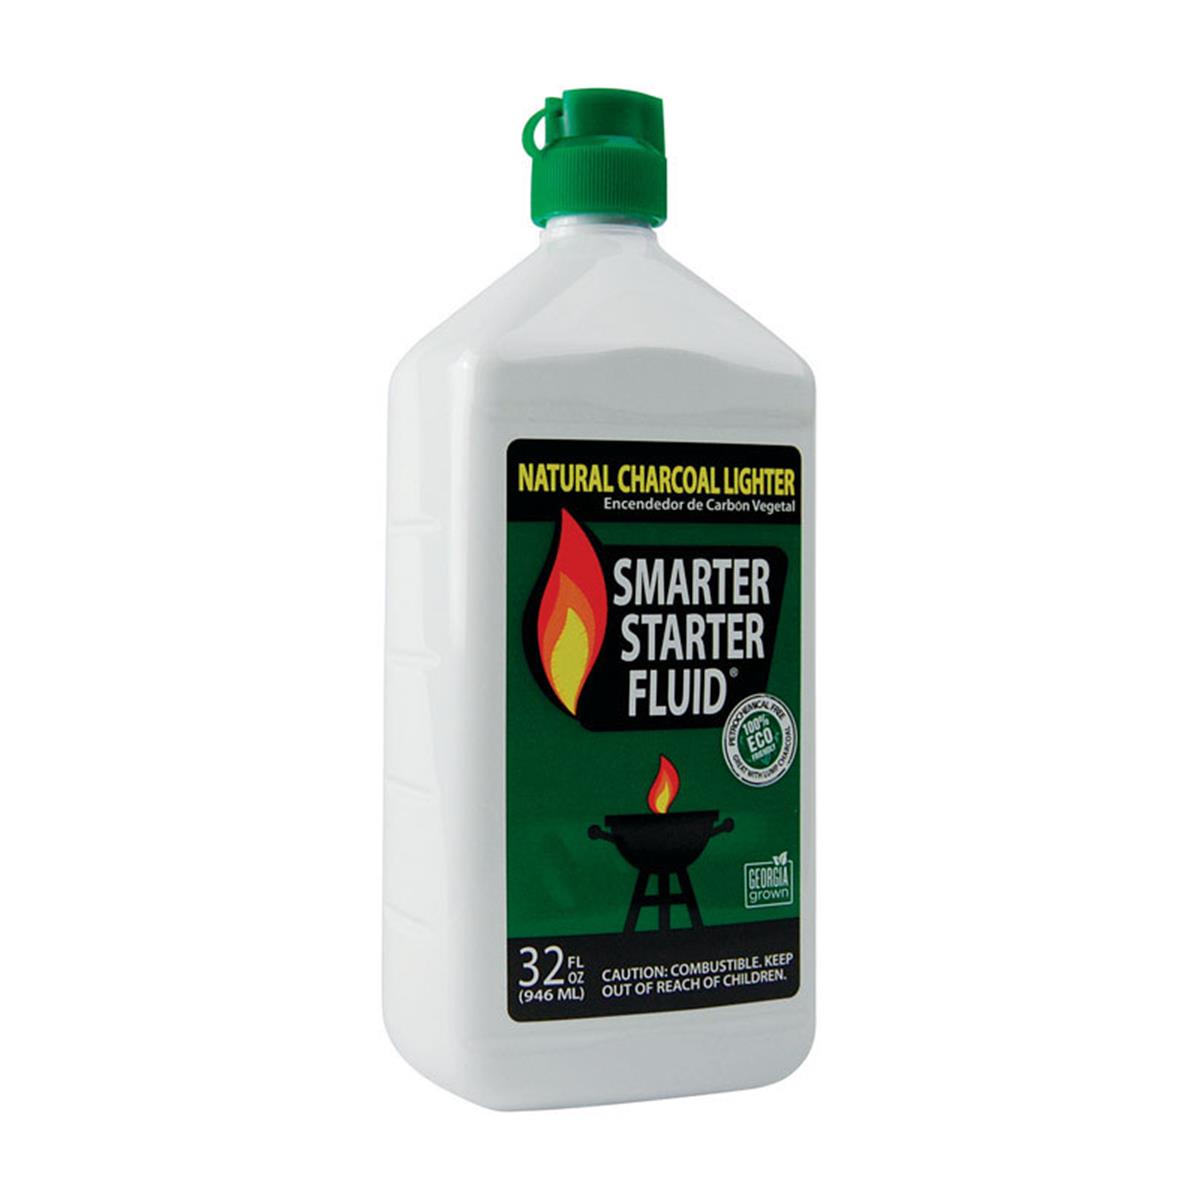 Picture of Smarter Starter Fluid 8539926 32 oz Natural Charcoal Lighter Fluid, Pack of 6